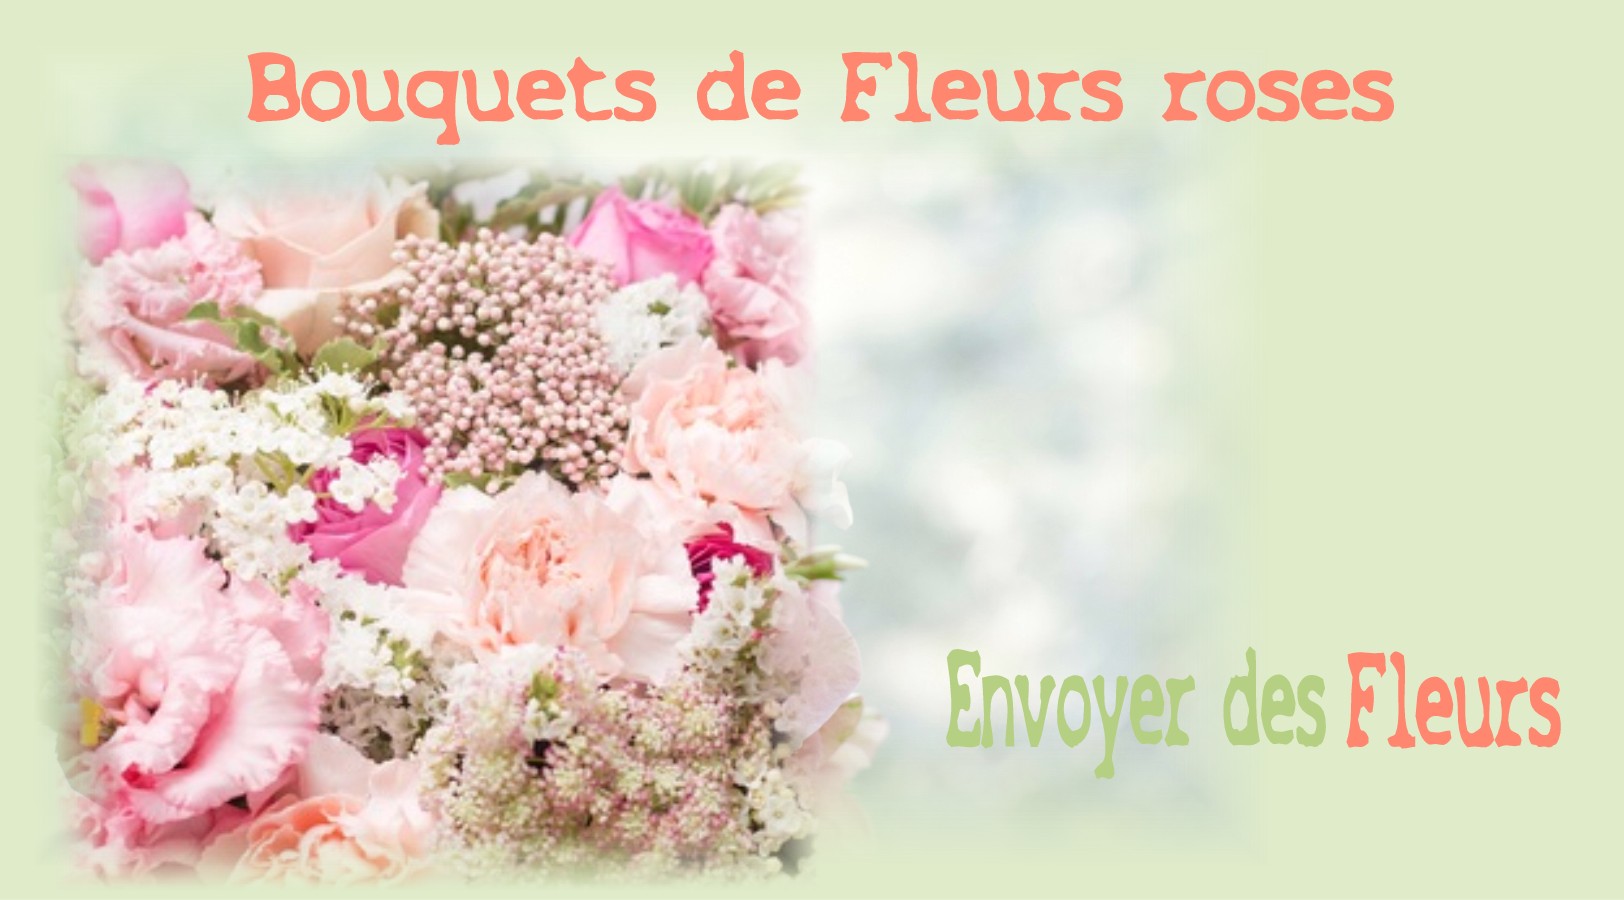 BOUQUETS DE FLEURS ROSES - FLEURISTE LILLE (59) - ENVOYER DES FLEURS